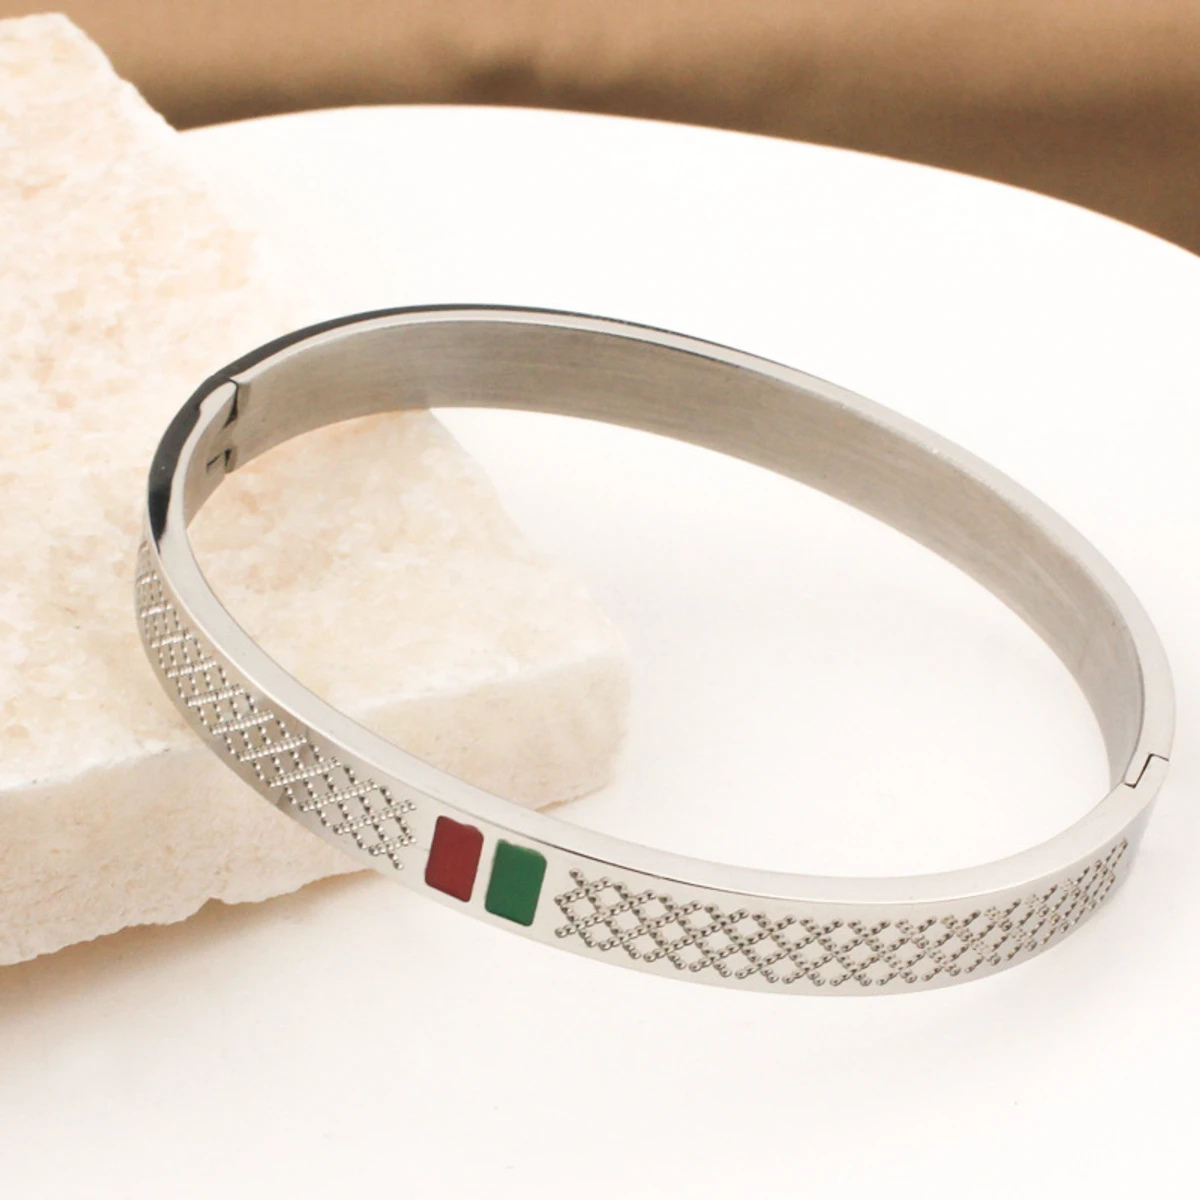 Gucci Stainless Steel Bracelet For Men